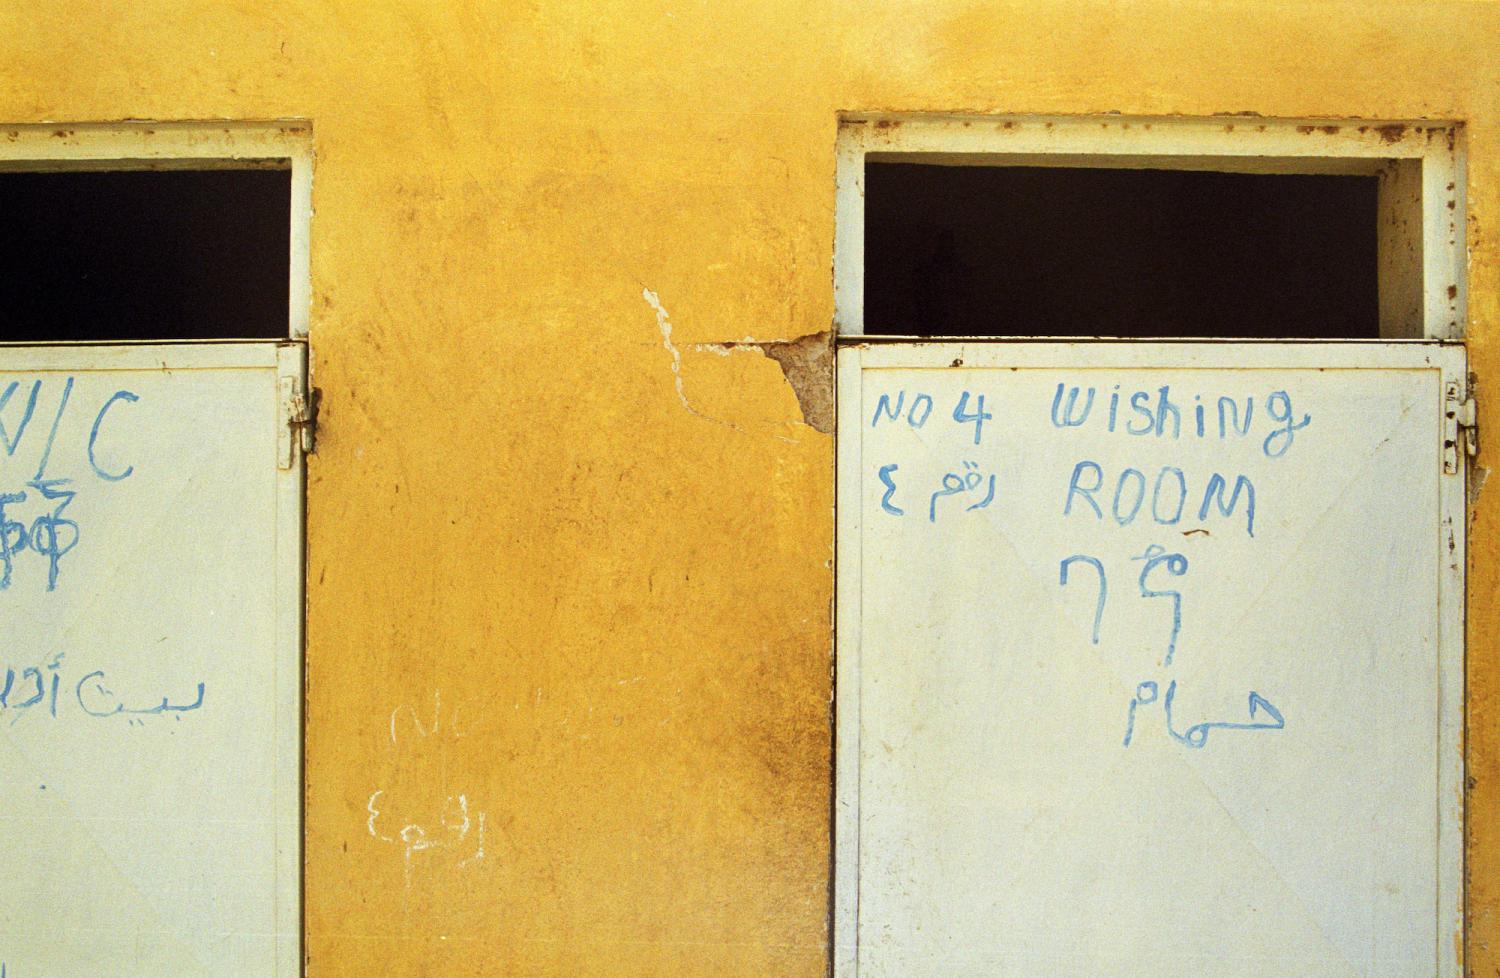 Dans un mur jaune, deux portes blanches avec inscriptions en plusieurs langues et alphabets - dont WC et Wishing room. Teseney, Erythrée, février 2005.